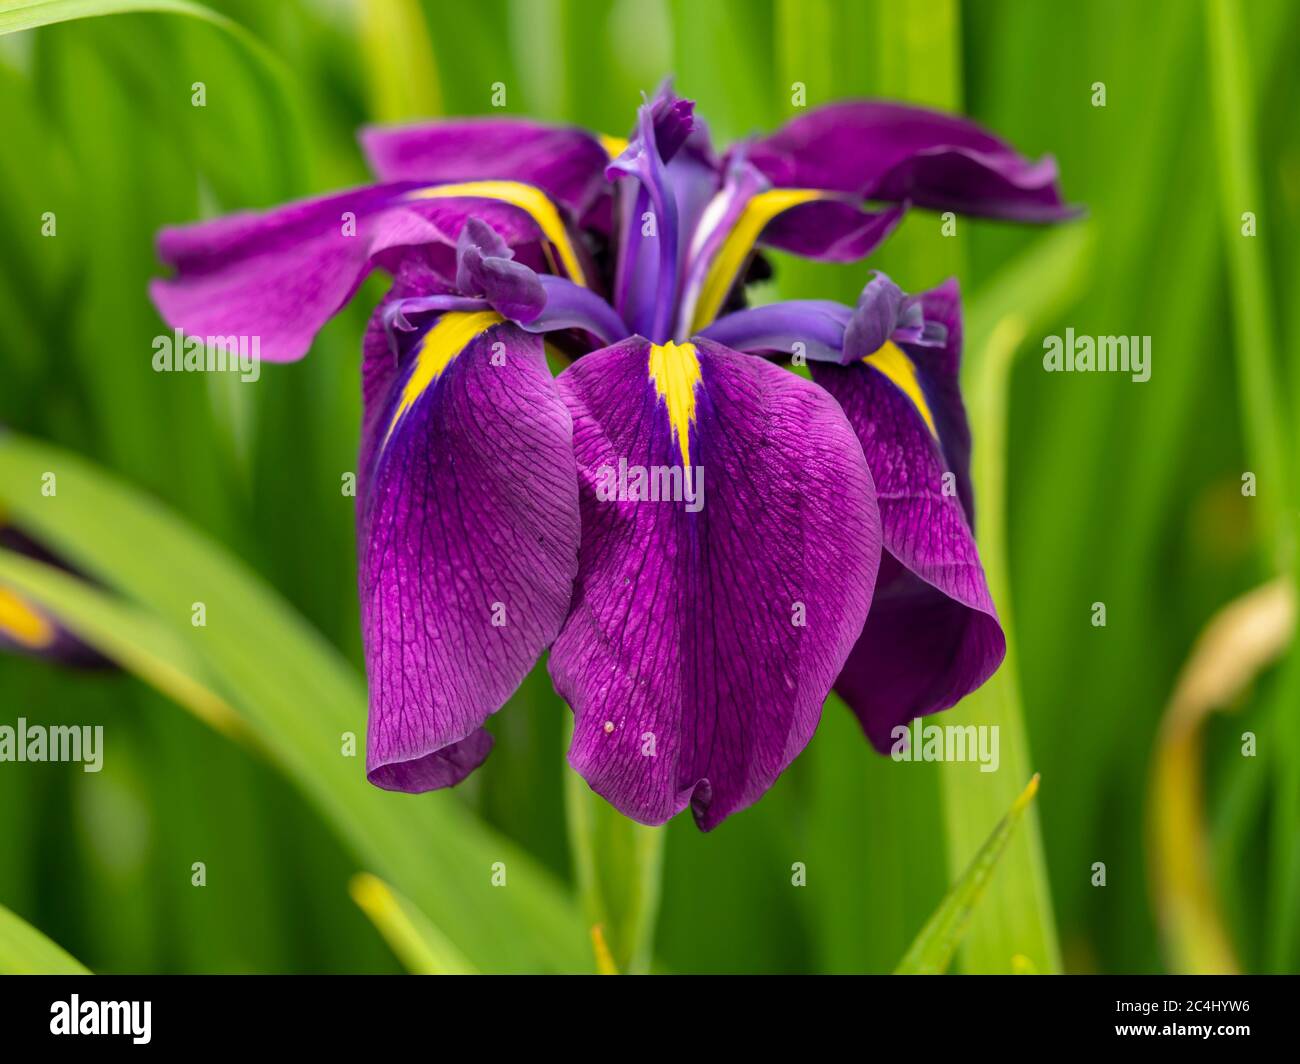 Nahaufnahme einer schönen lila und gelben japanischen Wasserlilie, Iris ensata, blühend in einem Garten Stockfoto